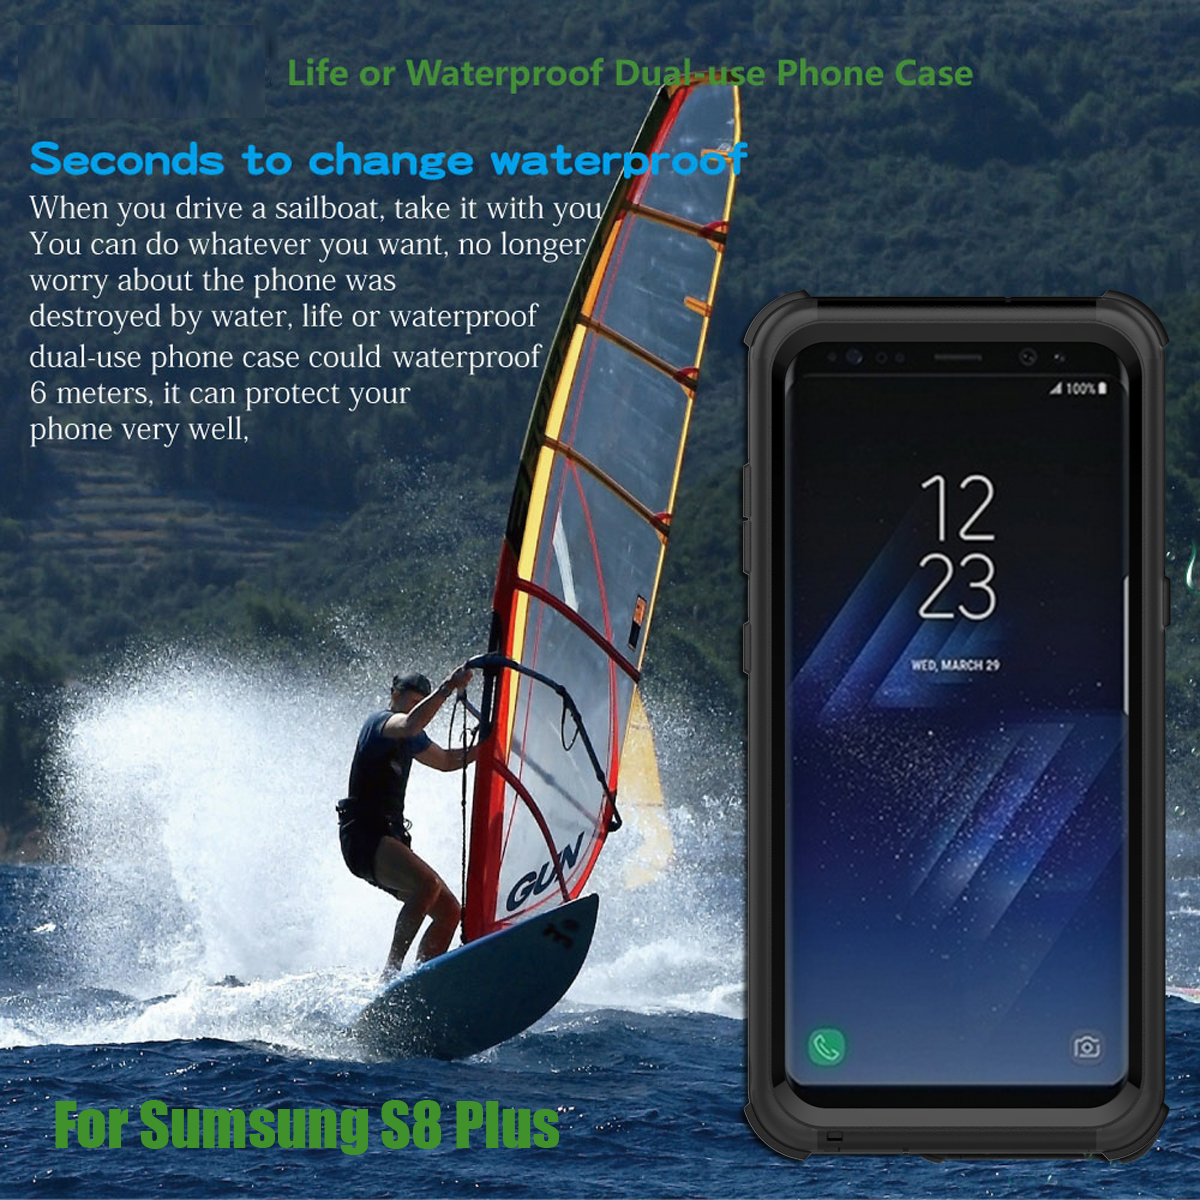 2-In-1-Waterproof-Snowproof-Dustproof-Shockproof-PC-PET-TPU-Case-for-Samsung-Galaxy-S8-Plus-62-1165447